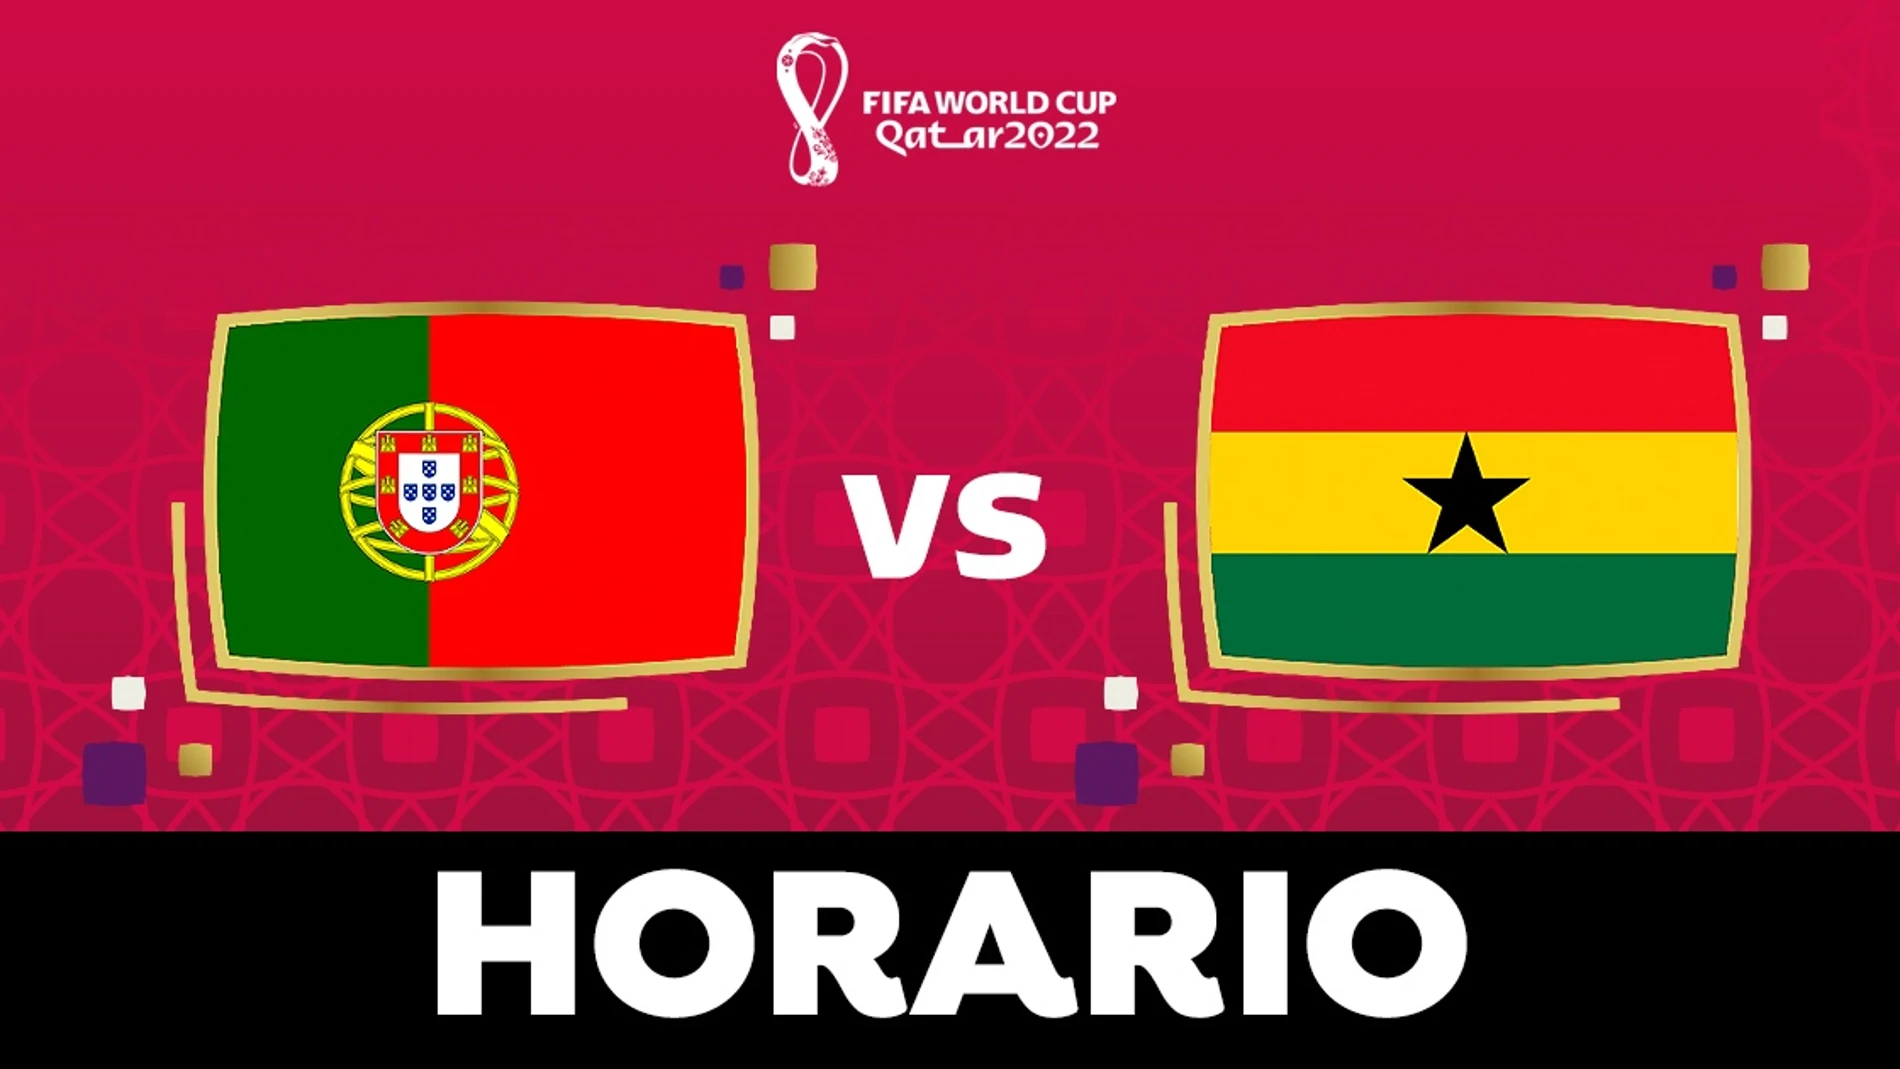 - Ghana: Horario, alineaciones y dónde ver el partido del Mundial Qatar en directo